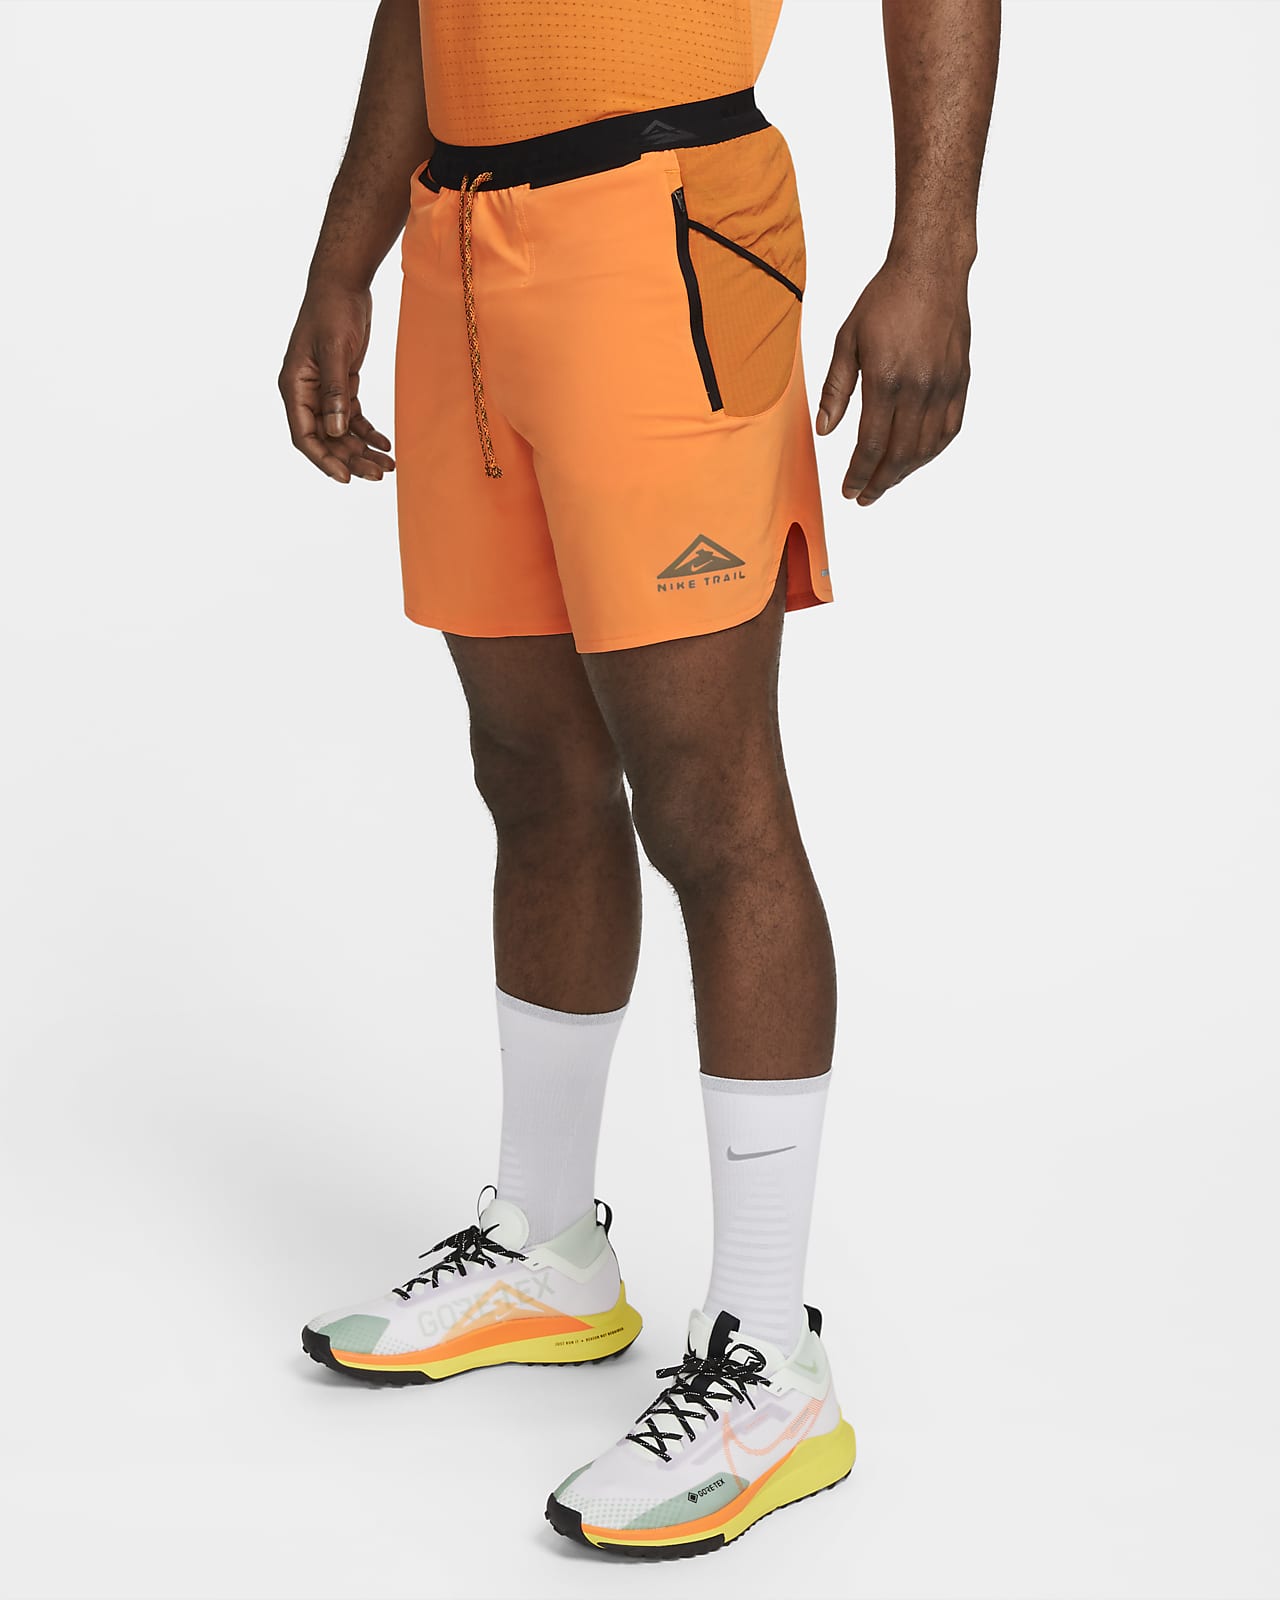 Shorts running con forro de ropa interior Dri-FIT de 18 para hombre Nike Second Sunrise.